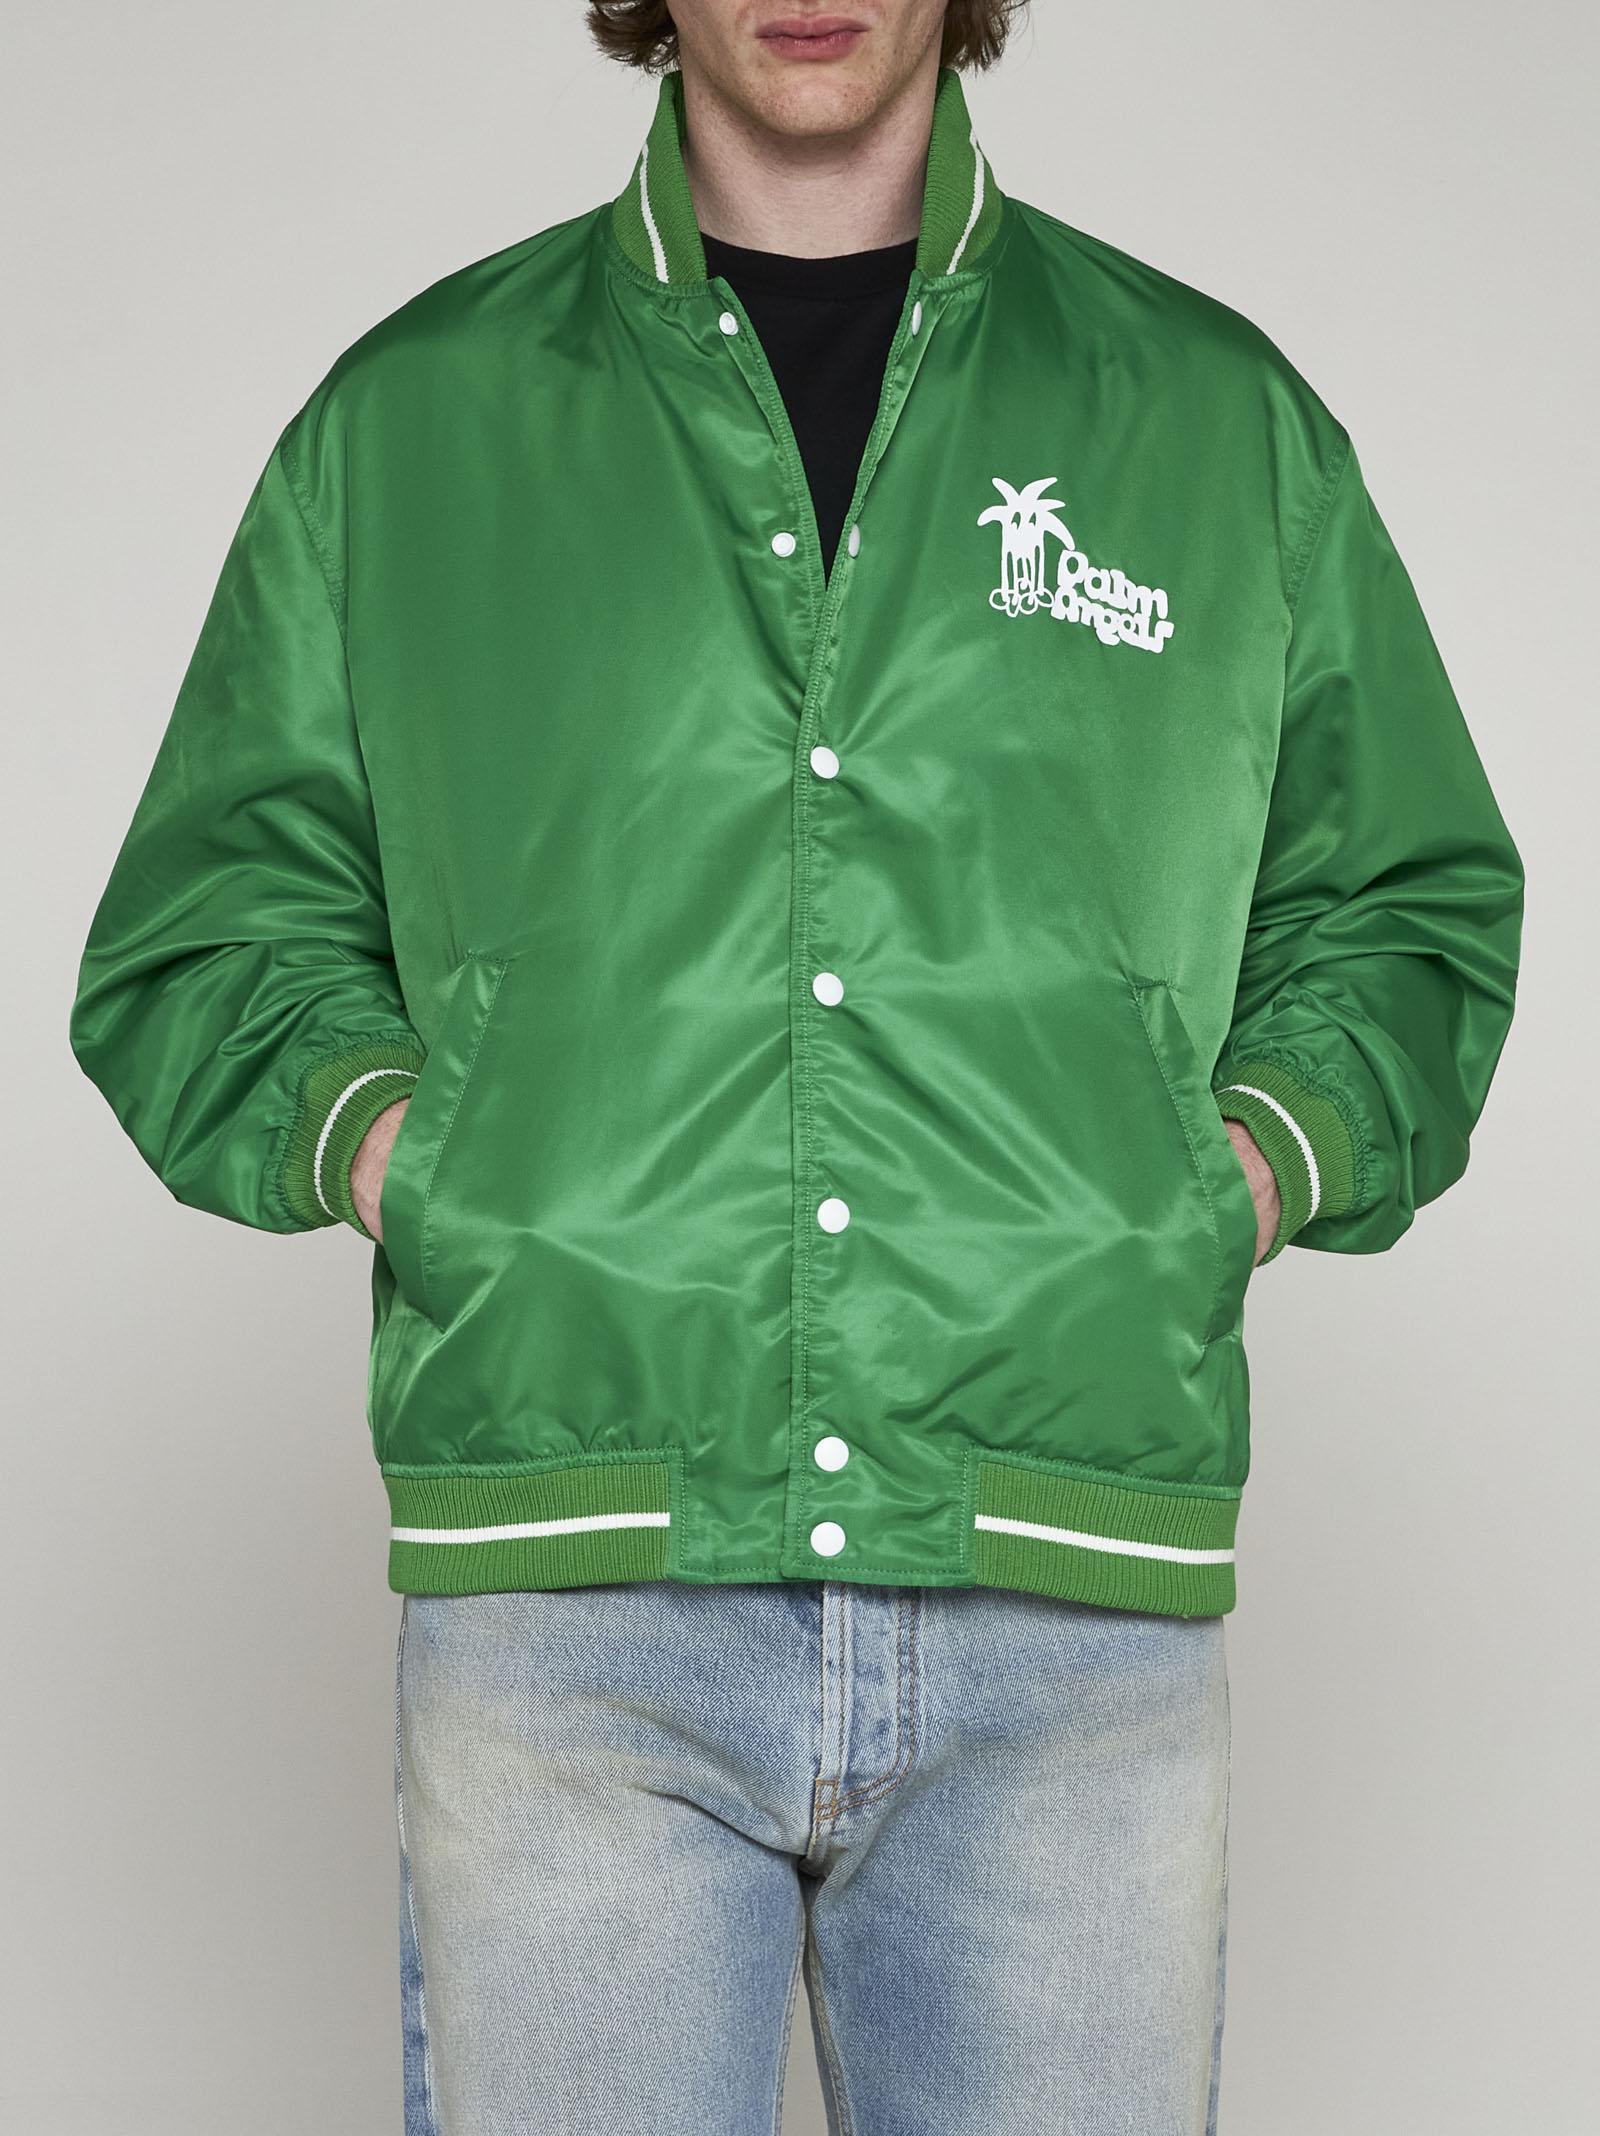 Men's Green Palm Angels Varsity Jacket - Jackets Expert